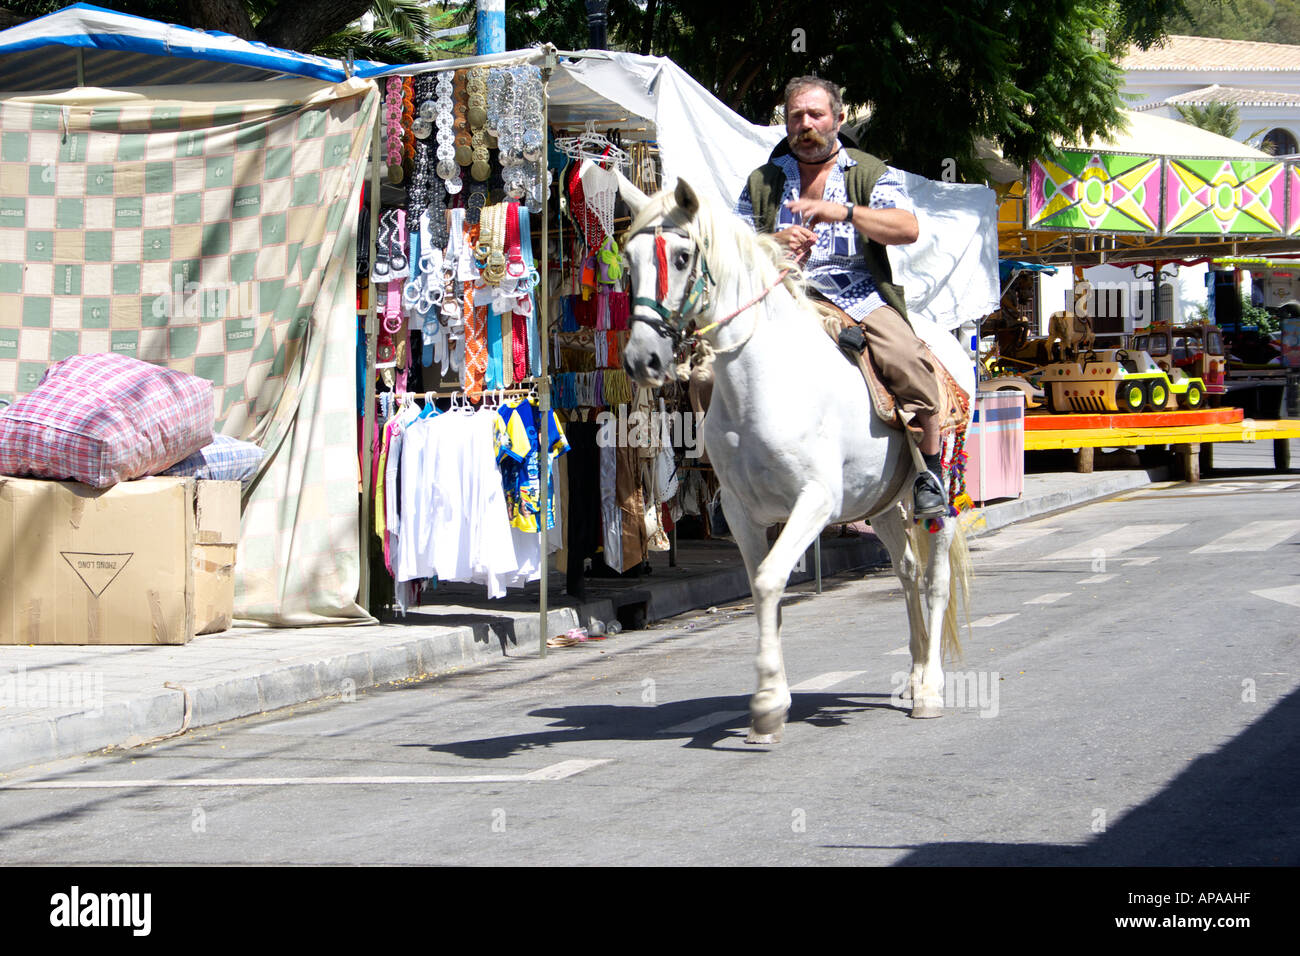 Man riding a white horse at the Mijas Feria, Spain Stock Photo